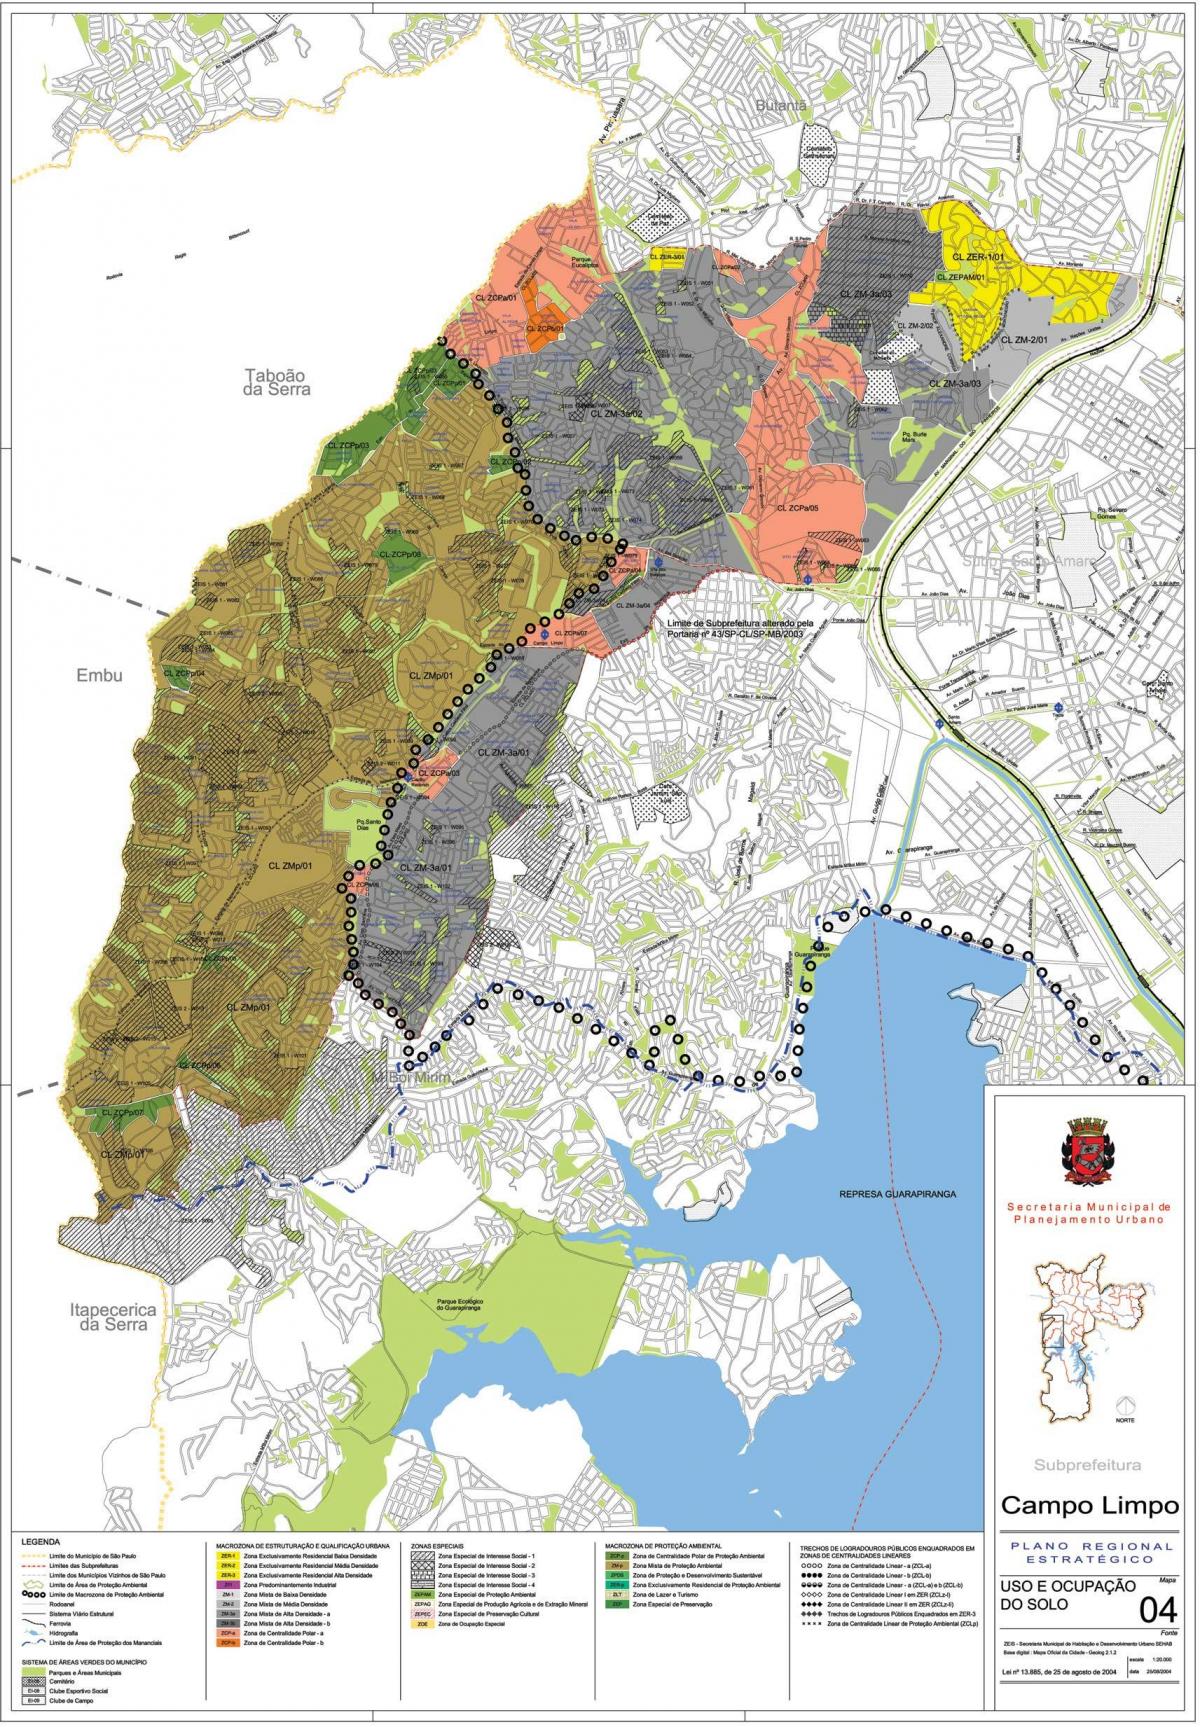 Peta dari Campo Limpo Sao Paulo - Pendudukan tanah